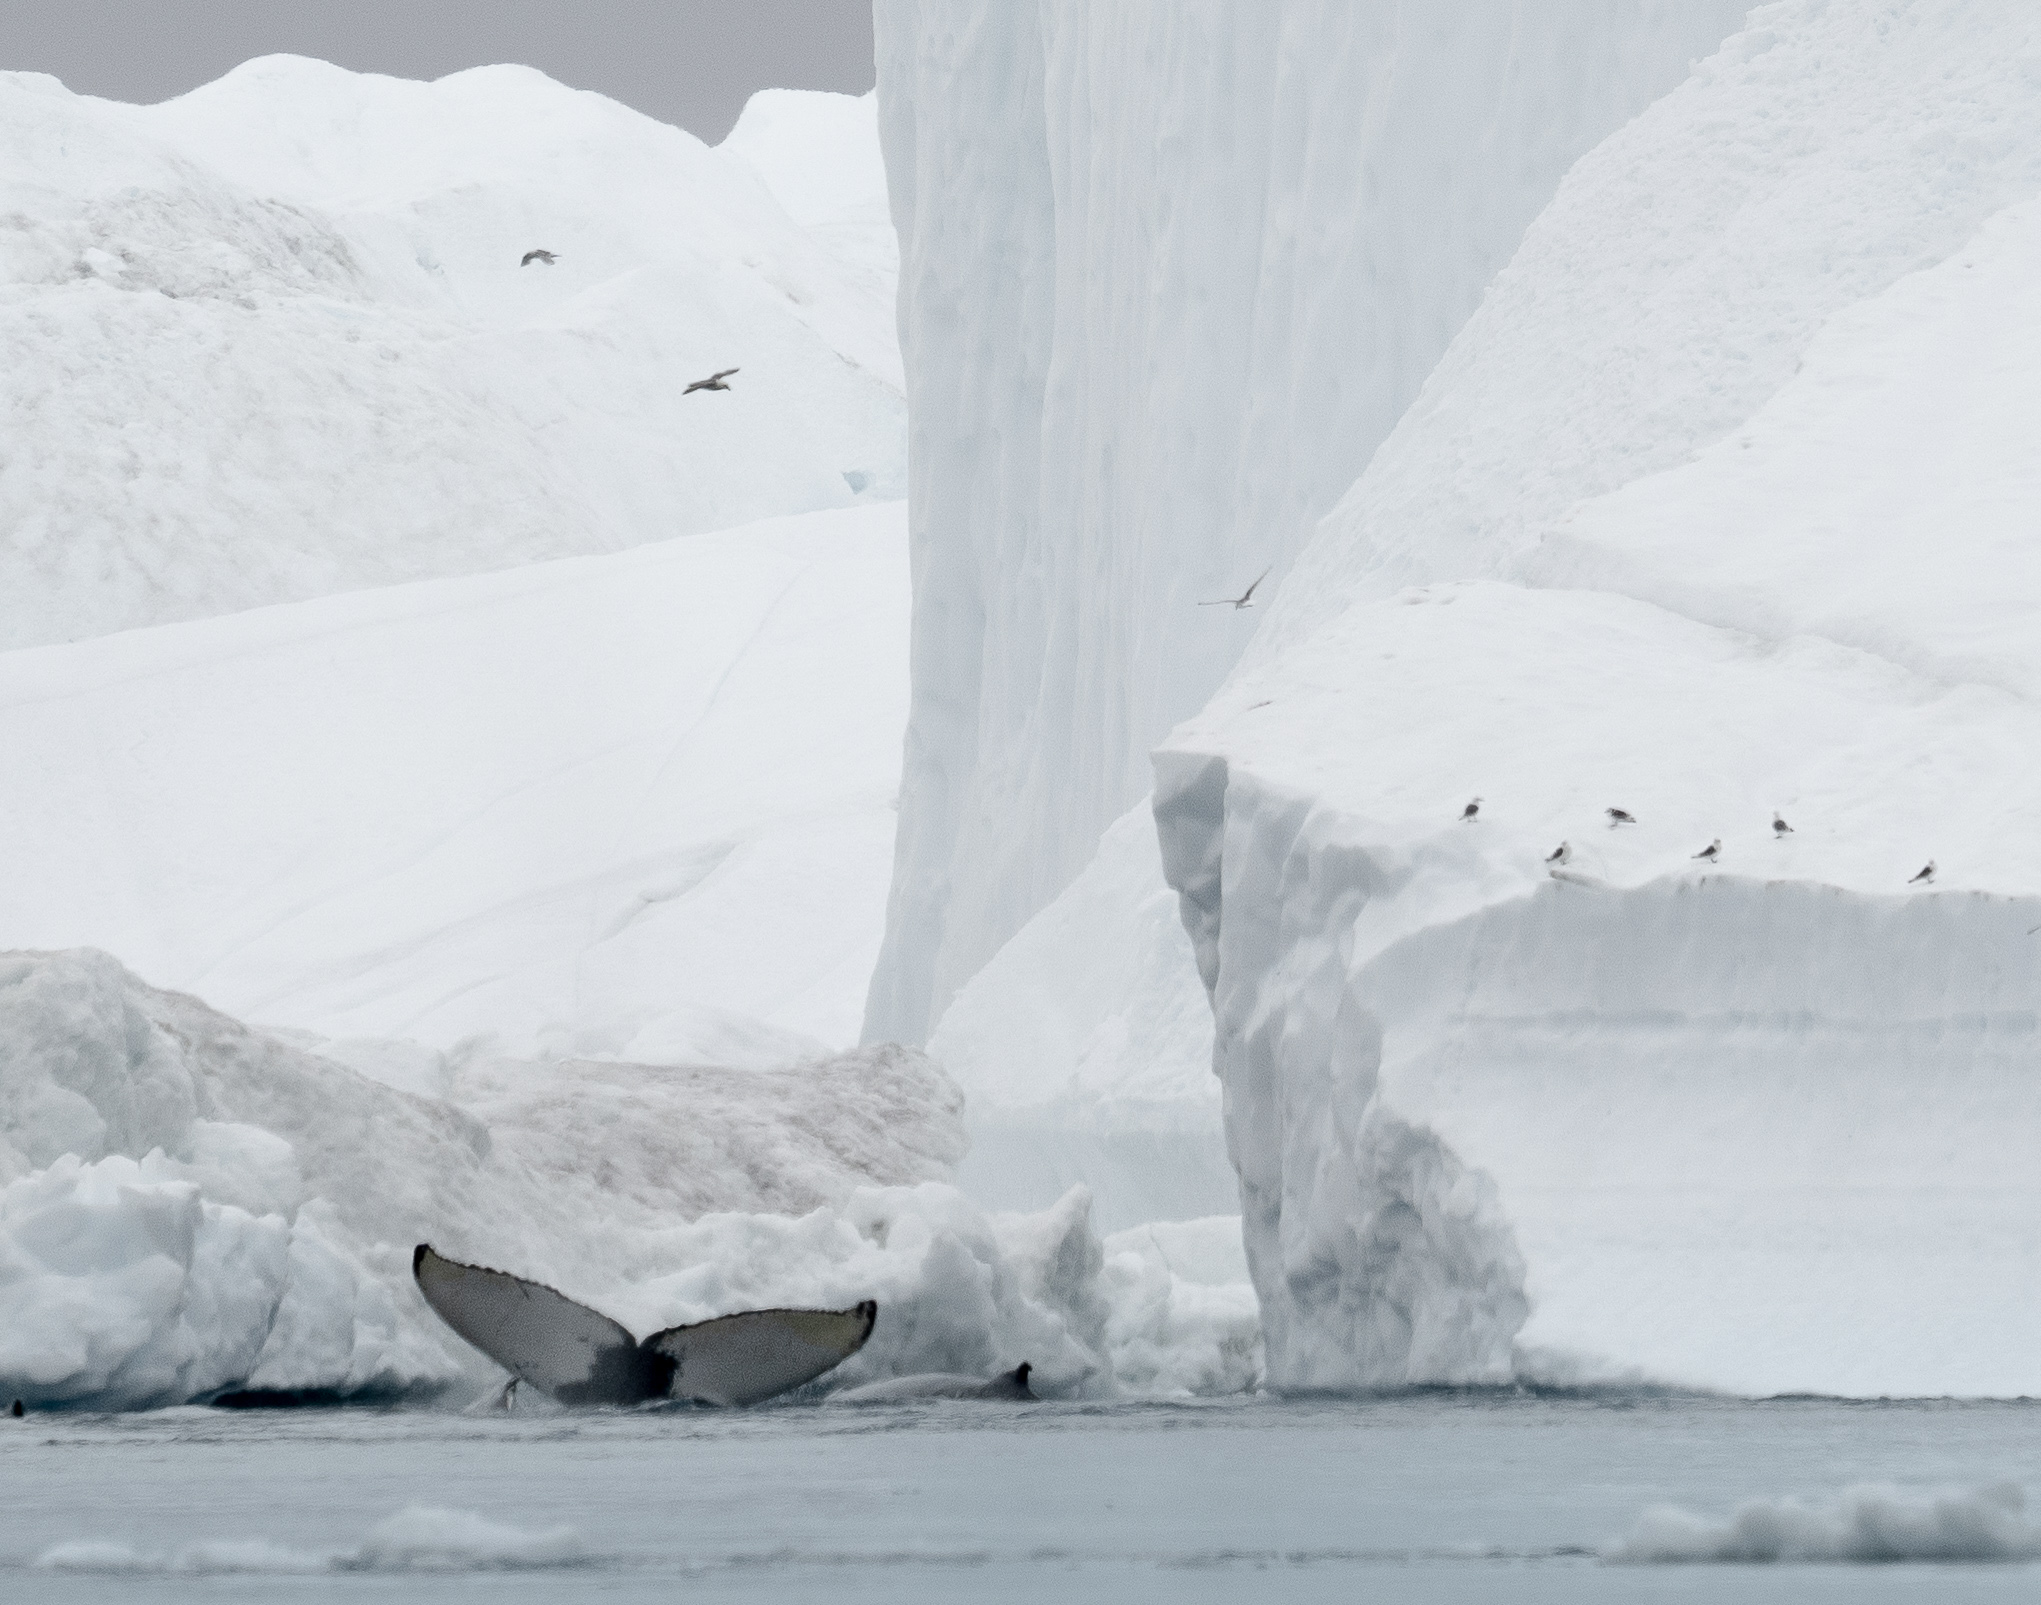 Visitar el círculo ártico de manera responsable: 7 cosas que saber - 15